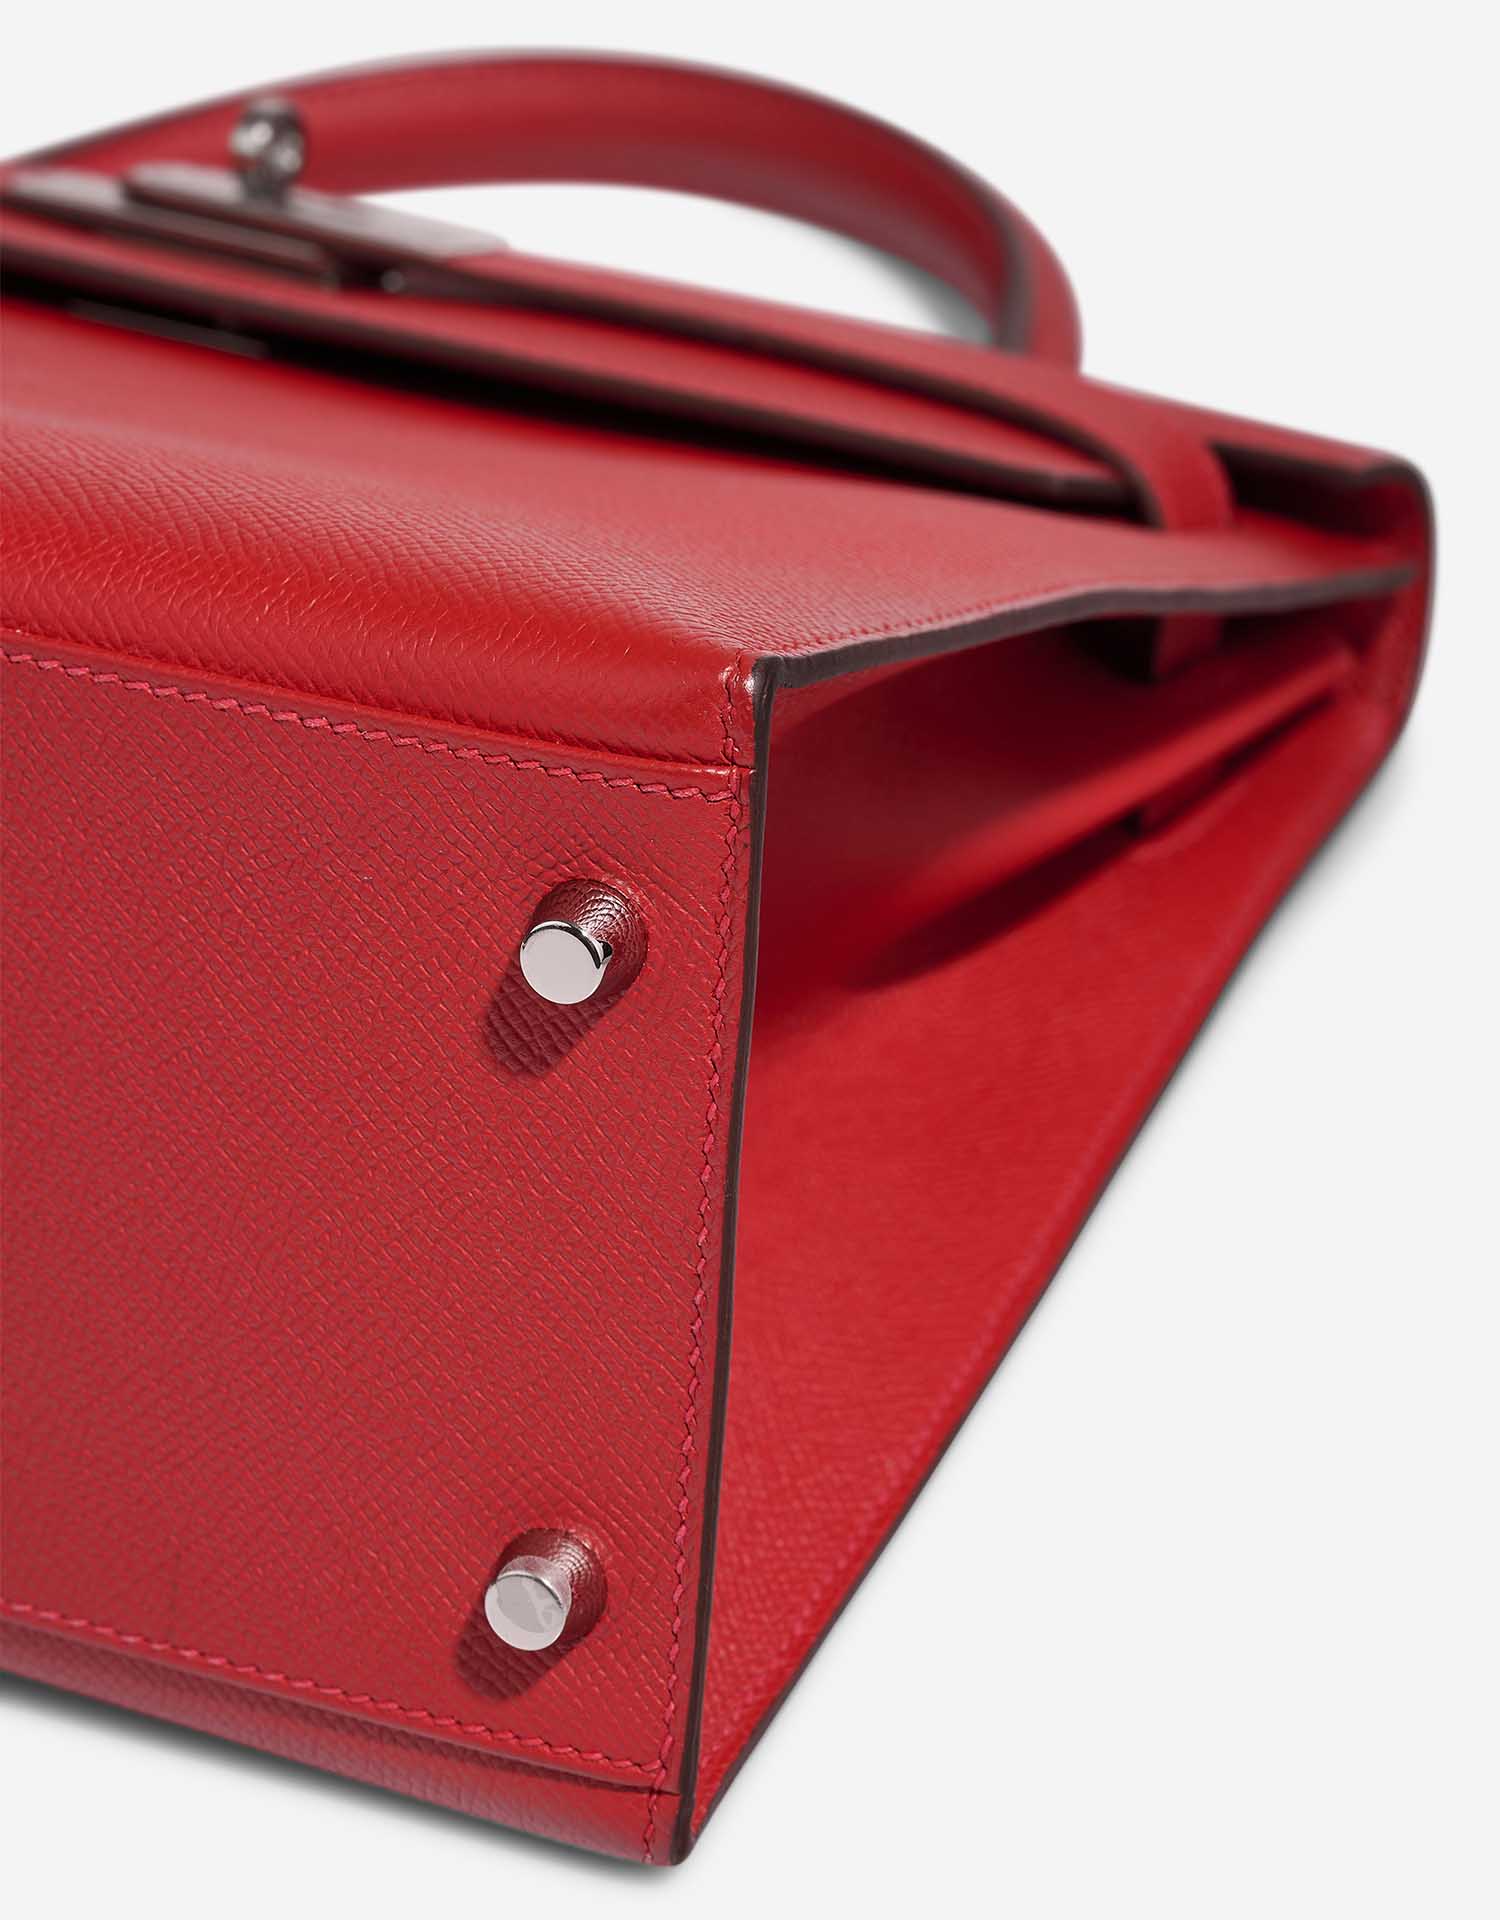 Hermès Kelly 32 RougeCasaque signes d'usure | Vendez votre sac de créateur sur Saclab.com